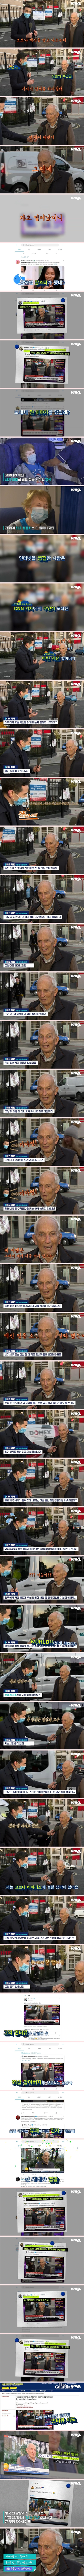 코로나 백신 맞고 나온 91세 할아버지, CNN 인터뷰를 찢었다.jpg